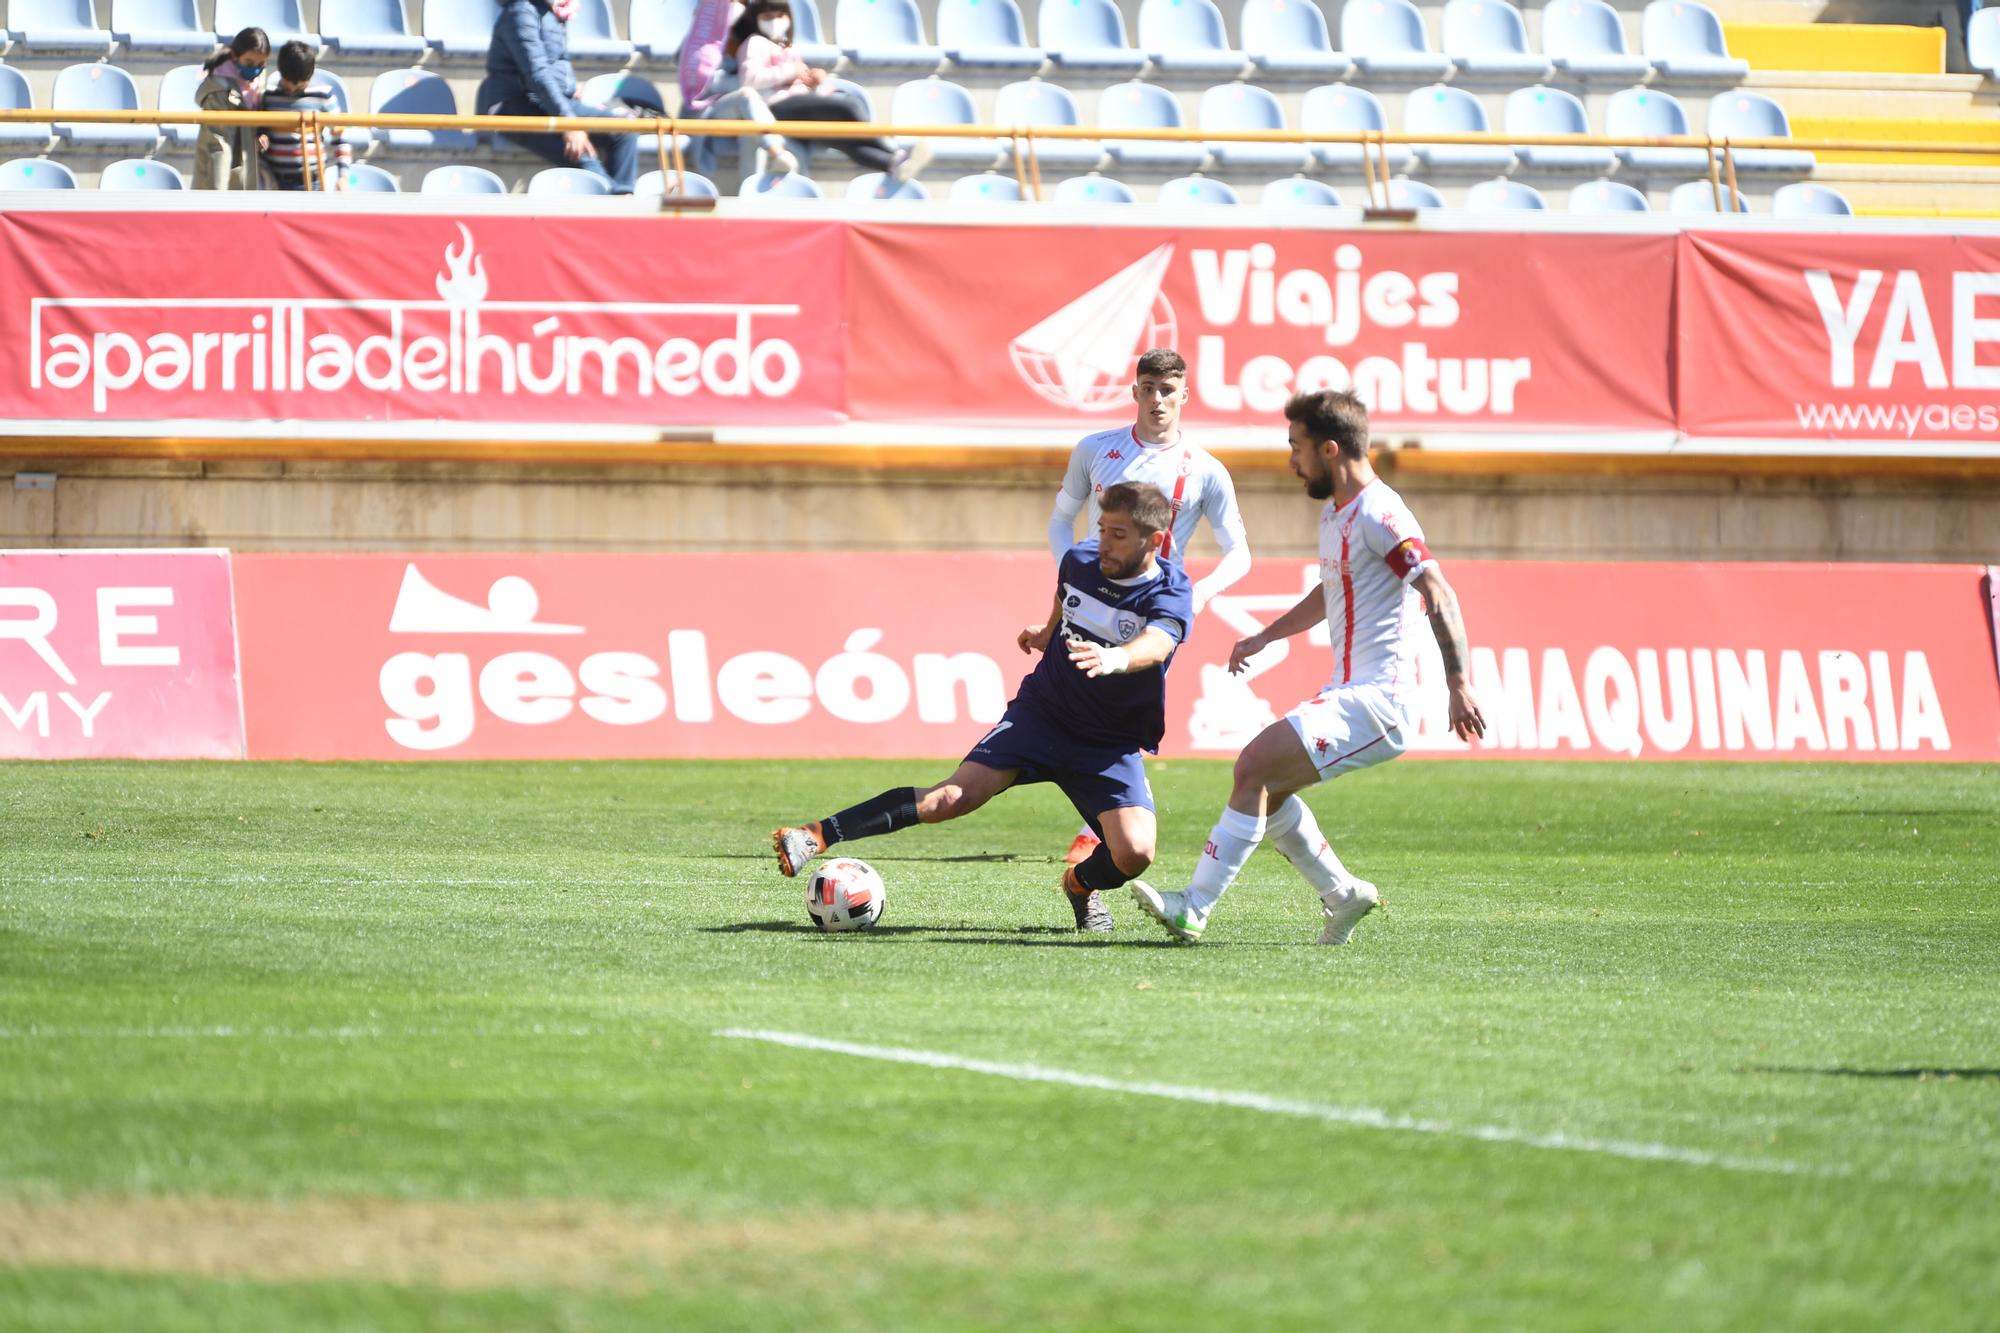 Las imágenes de los partidos de los equipos asturianos de Segunda División B